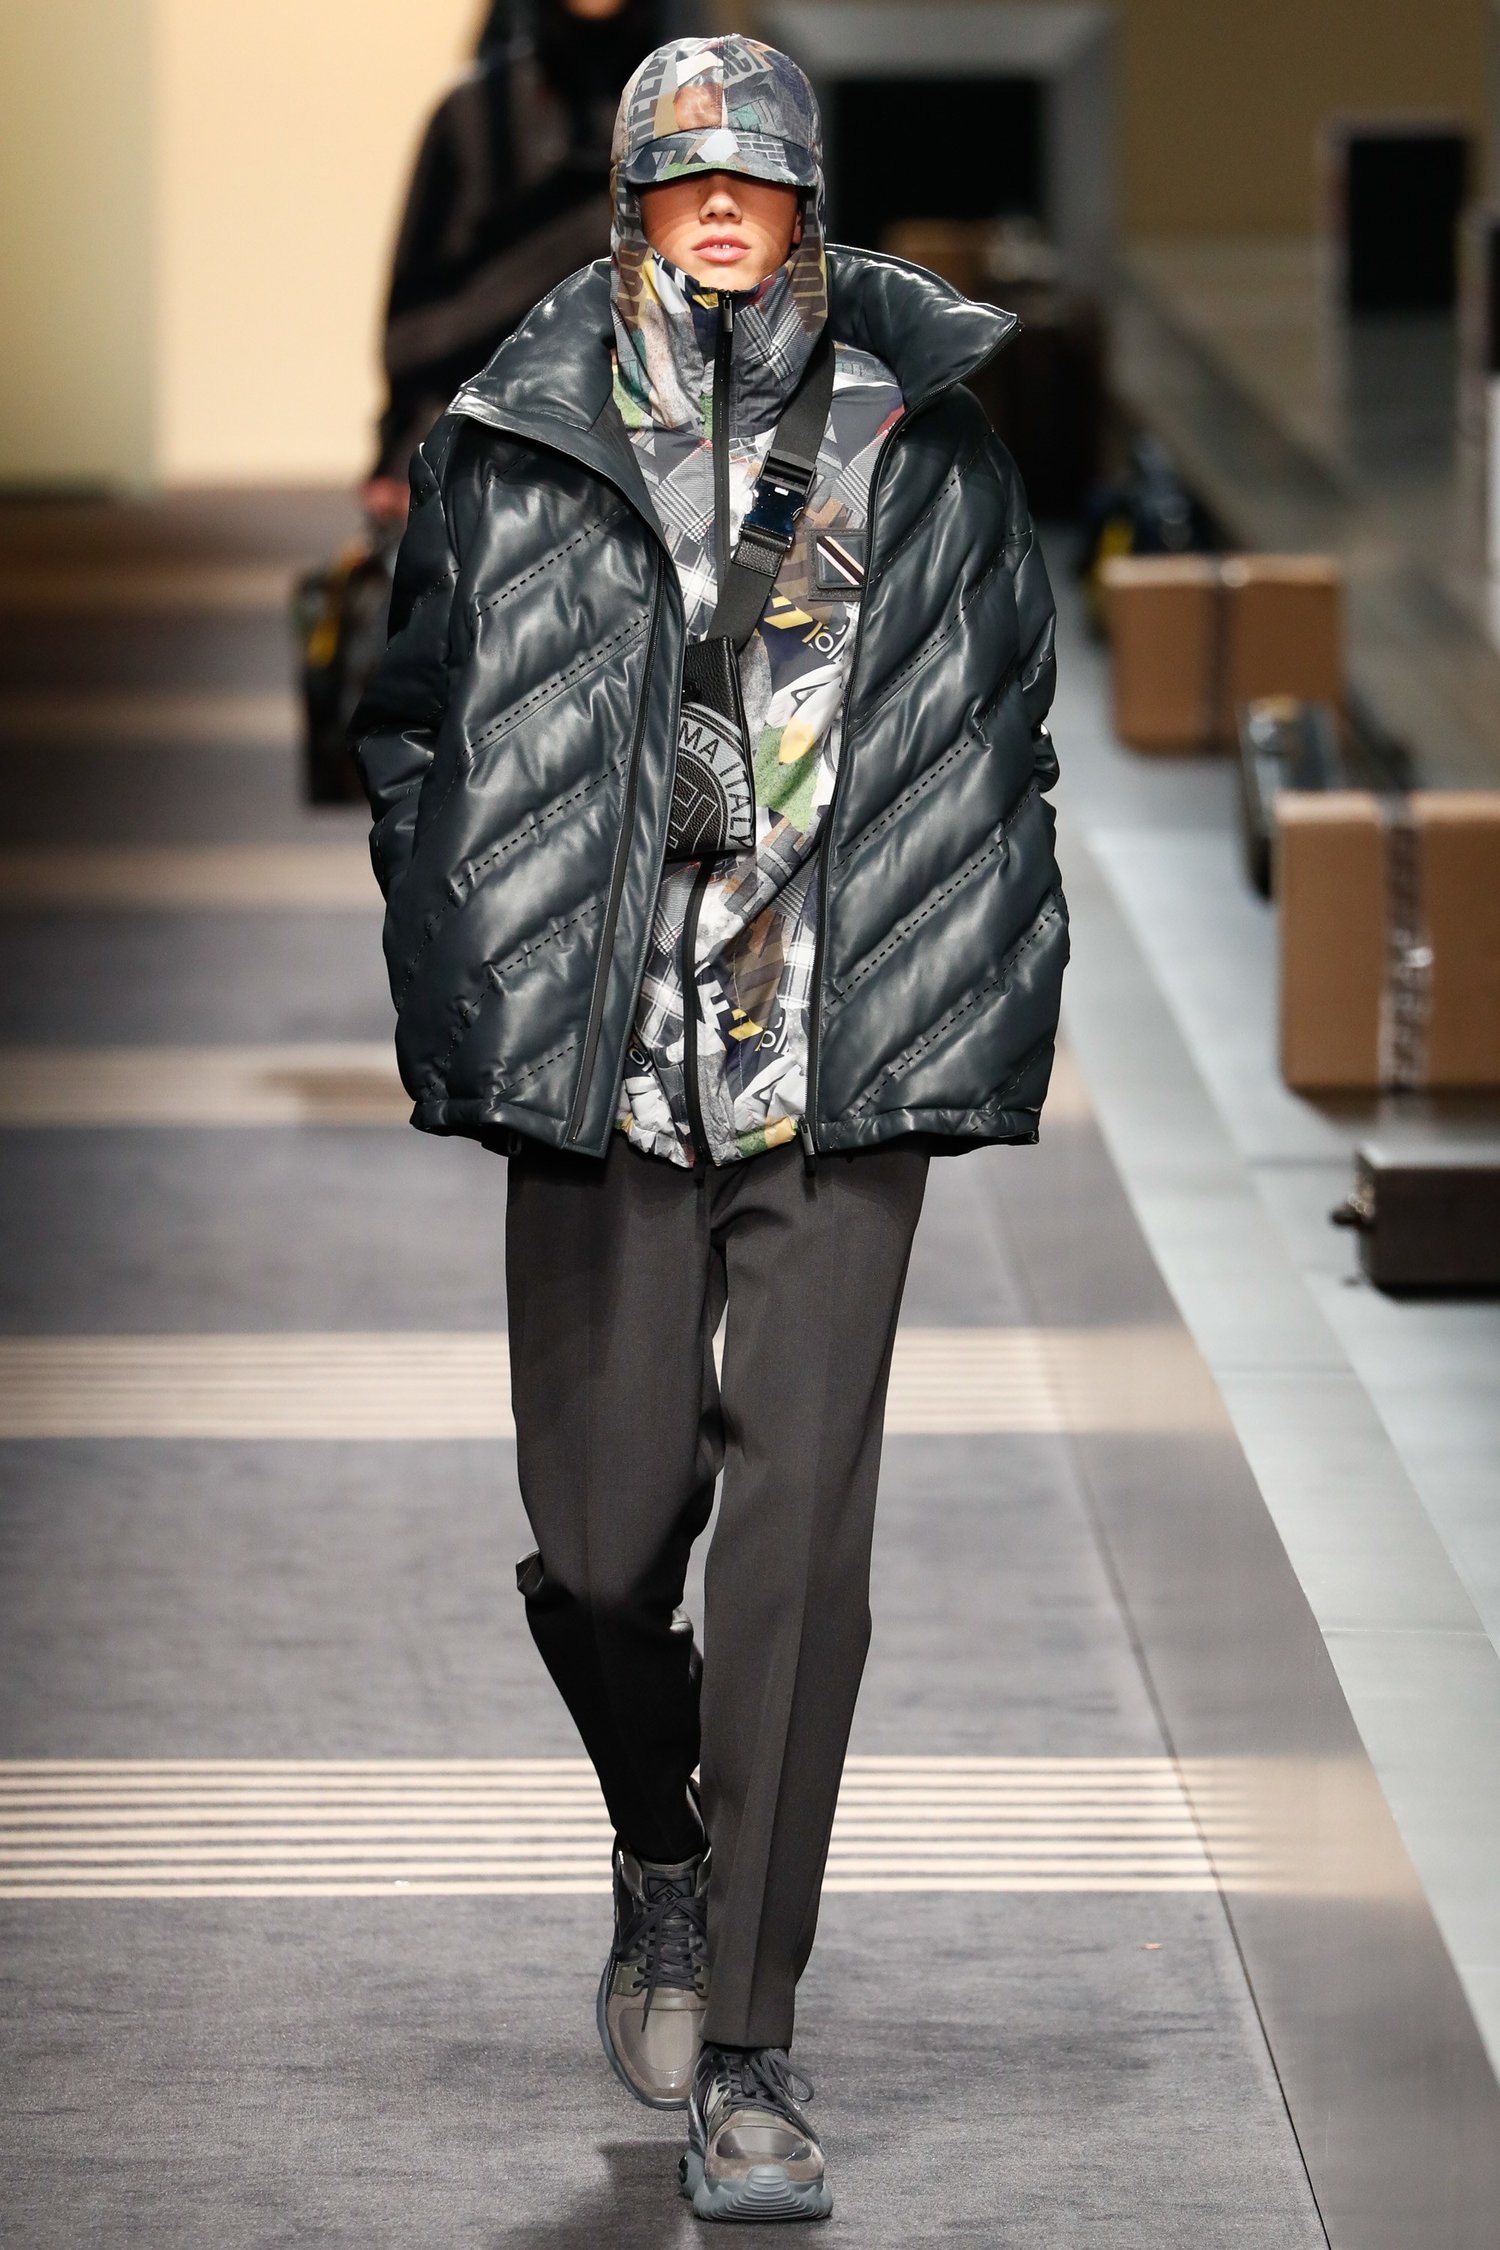 Louis Vuitton love  Insta fashion, Fashion, Winter fashion